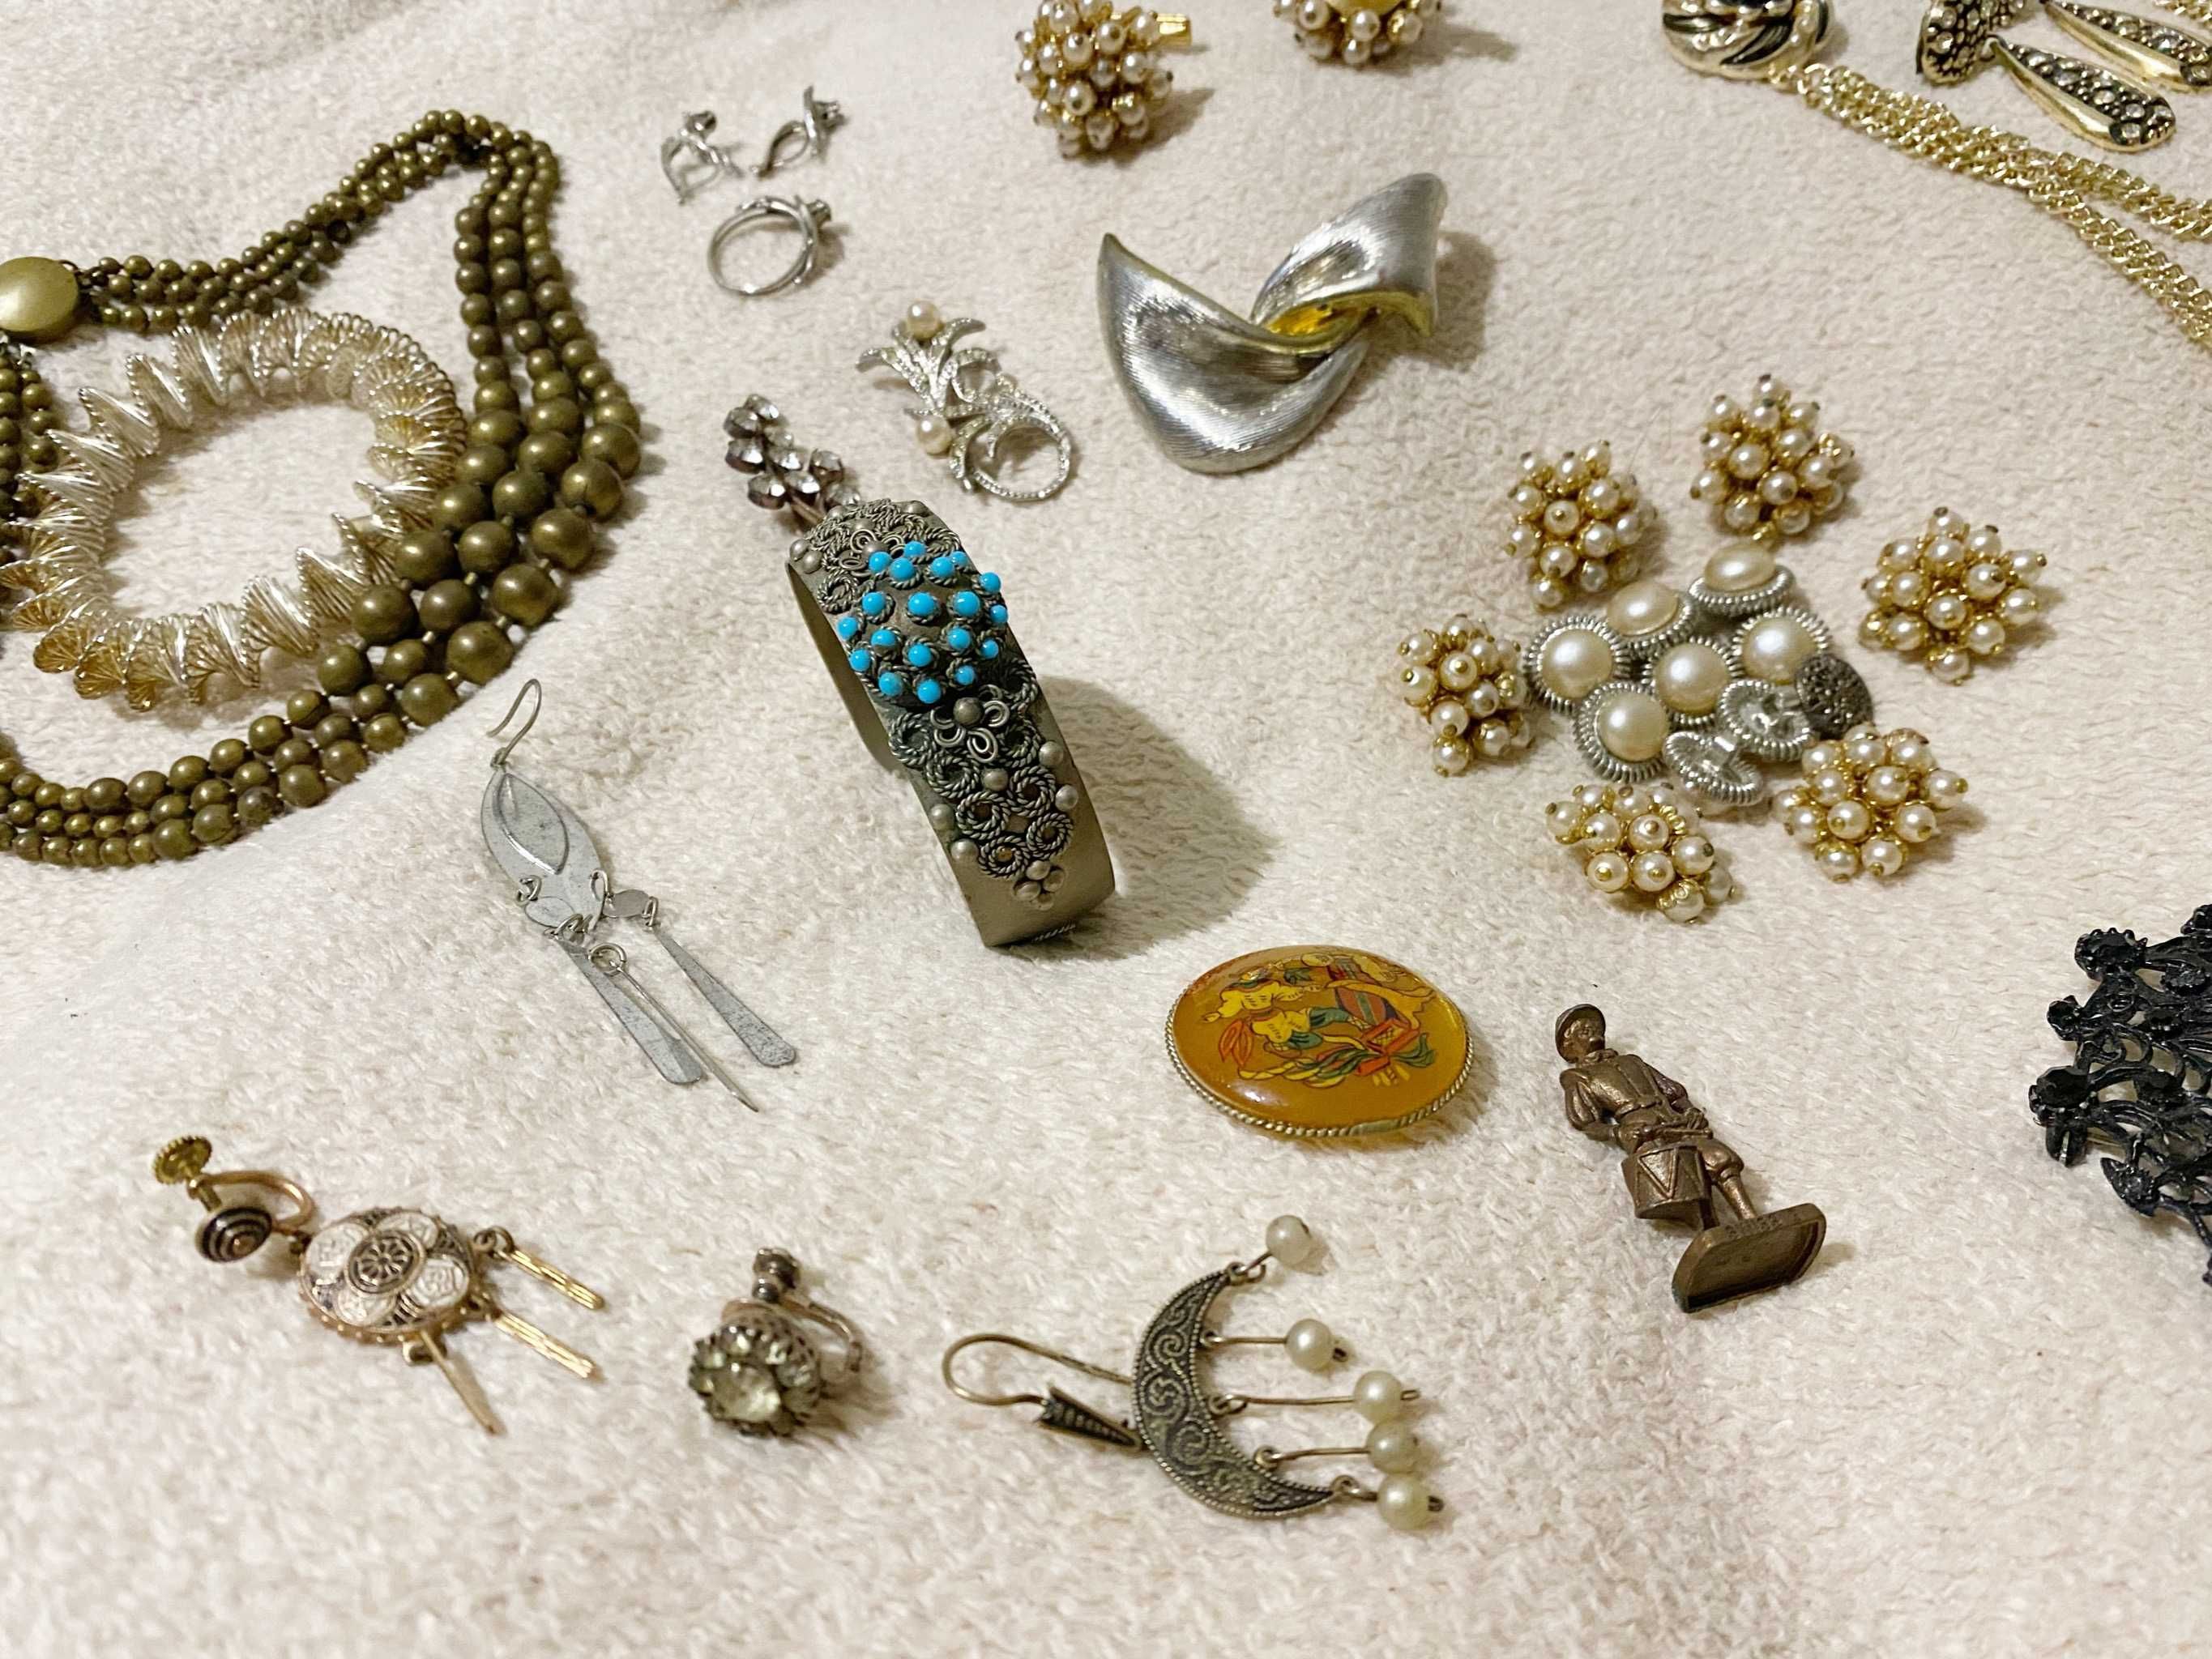 Старинные украшения (серебро, ценные камни), серьги, кольца, бусы